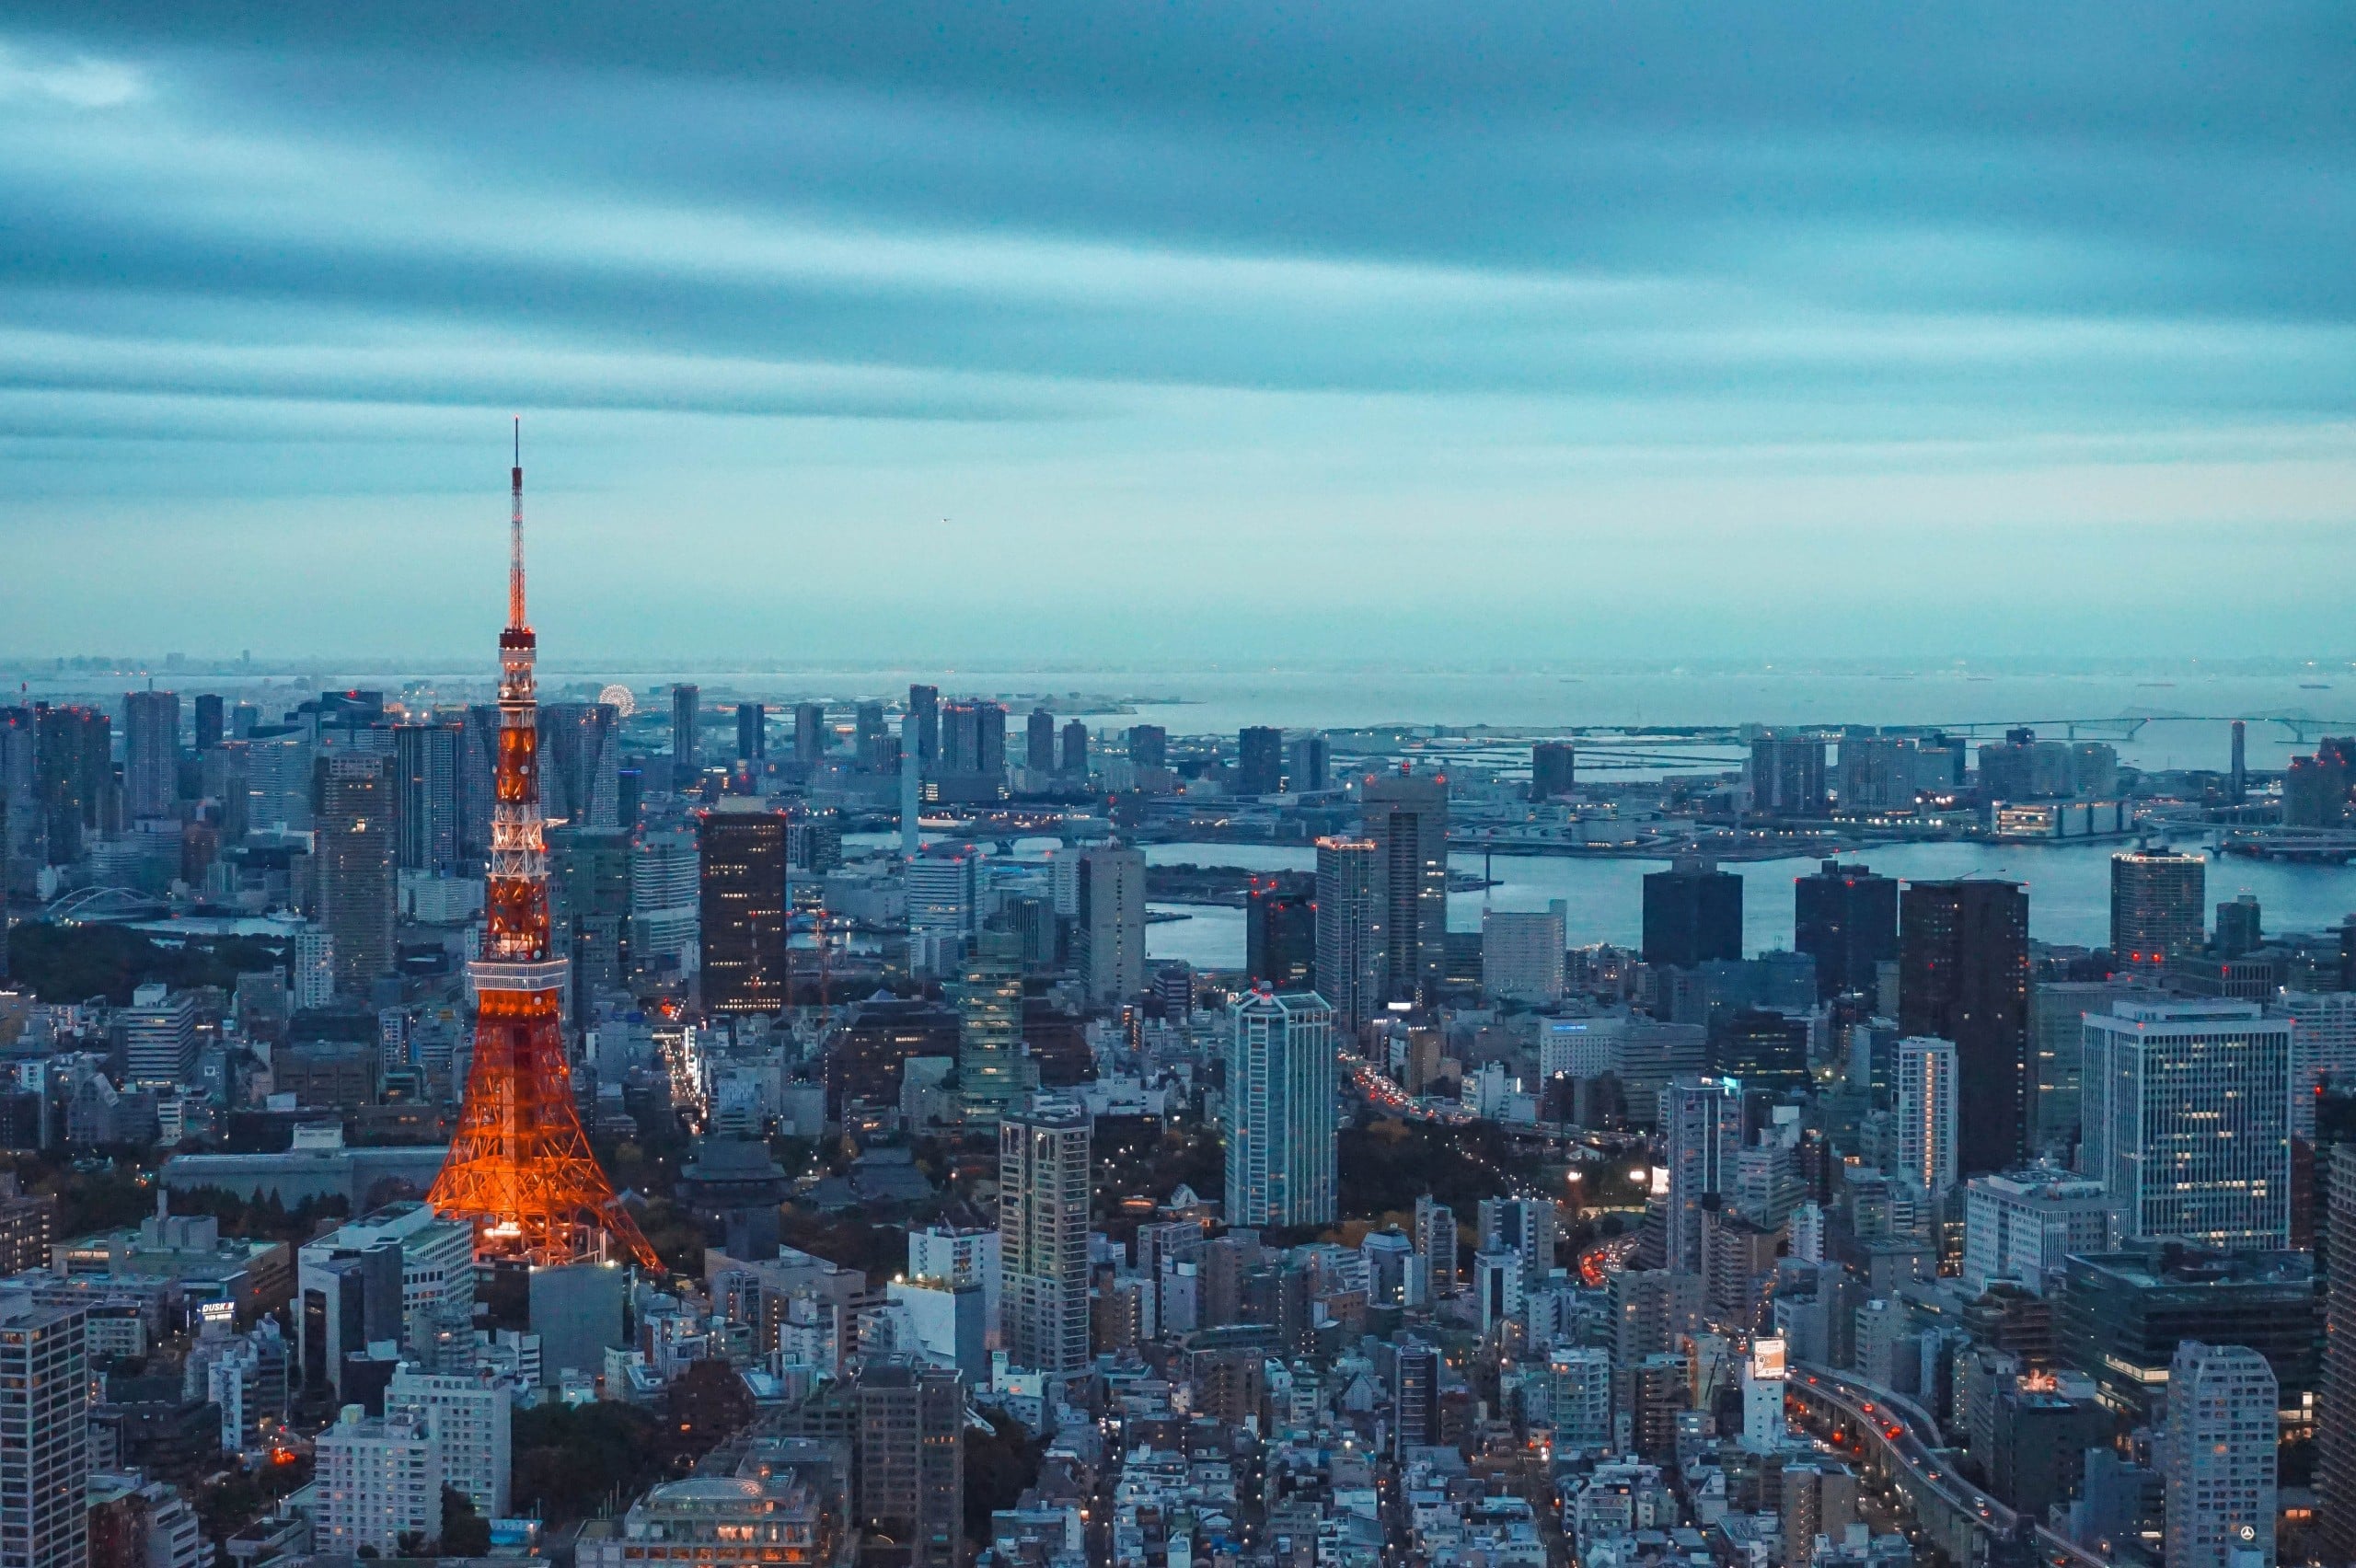 Tokio steht an der Spitze vieler Listen der größten Stadt der Welt. Bildquelle: Unsplash